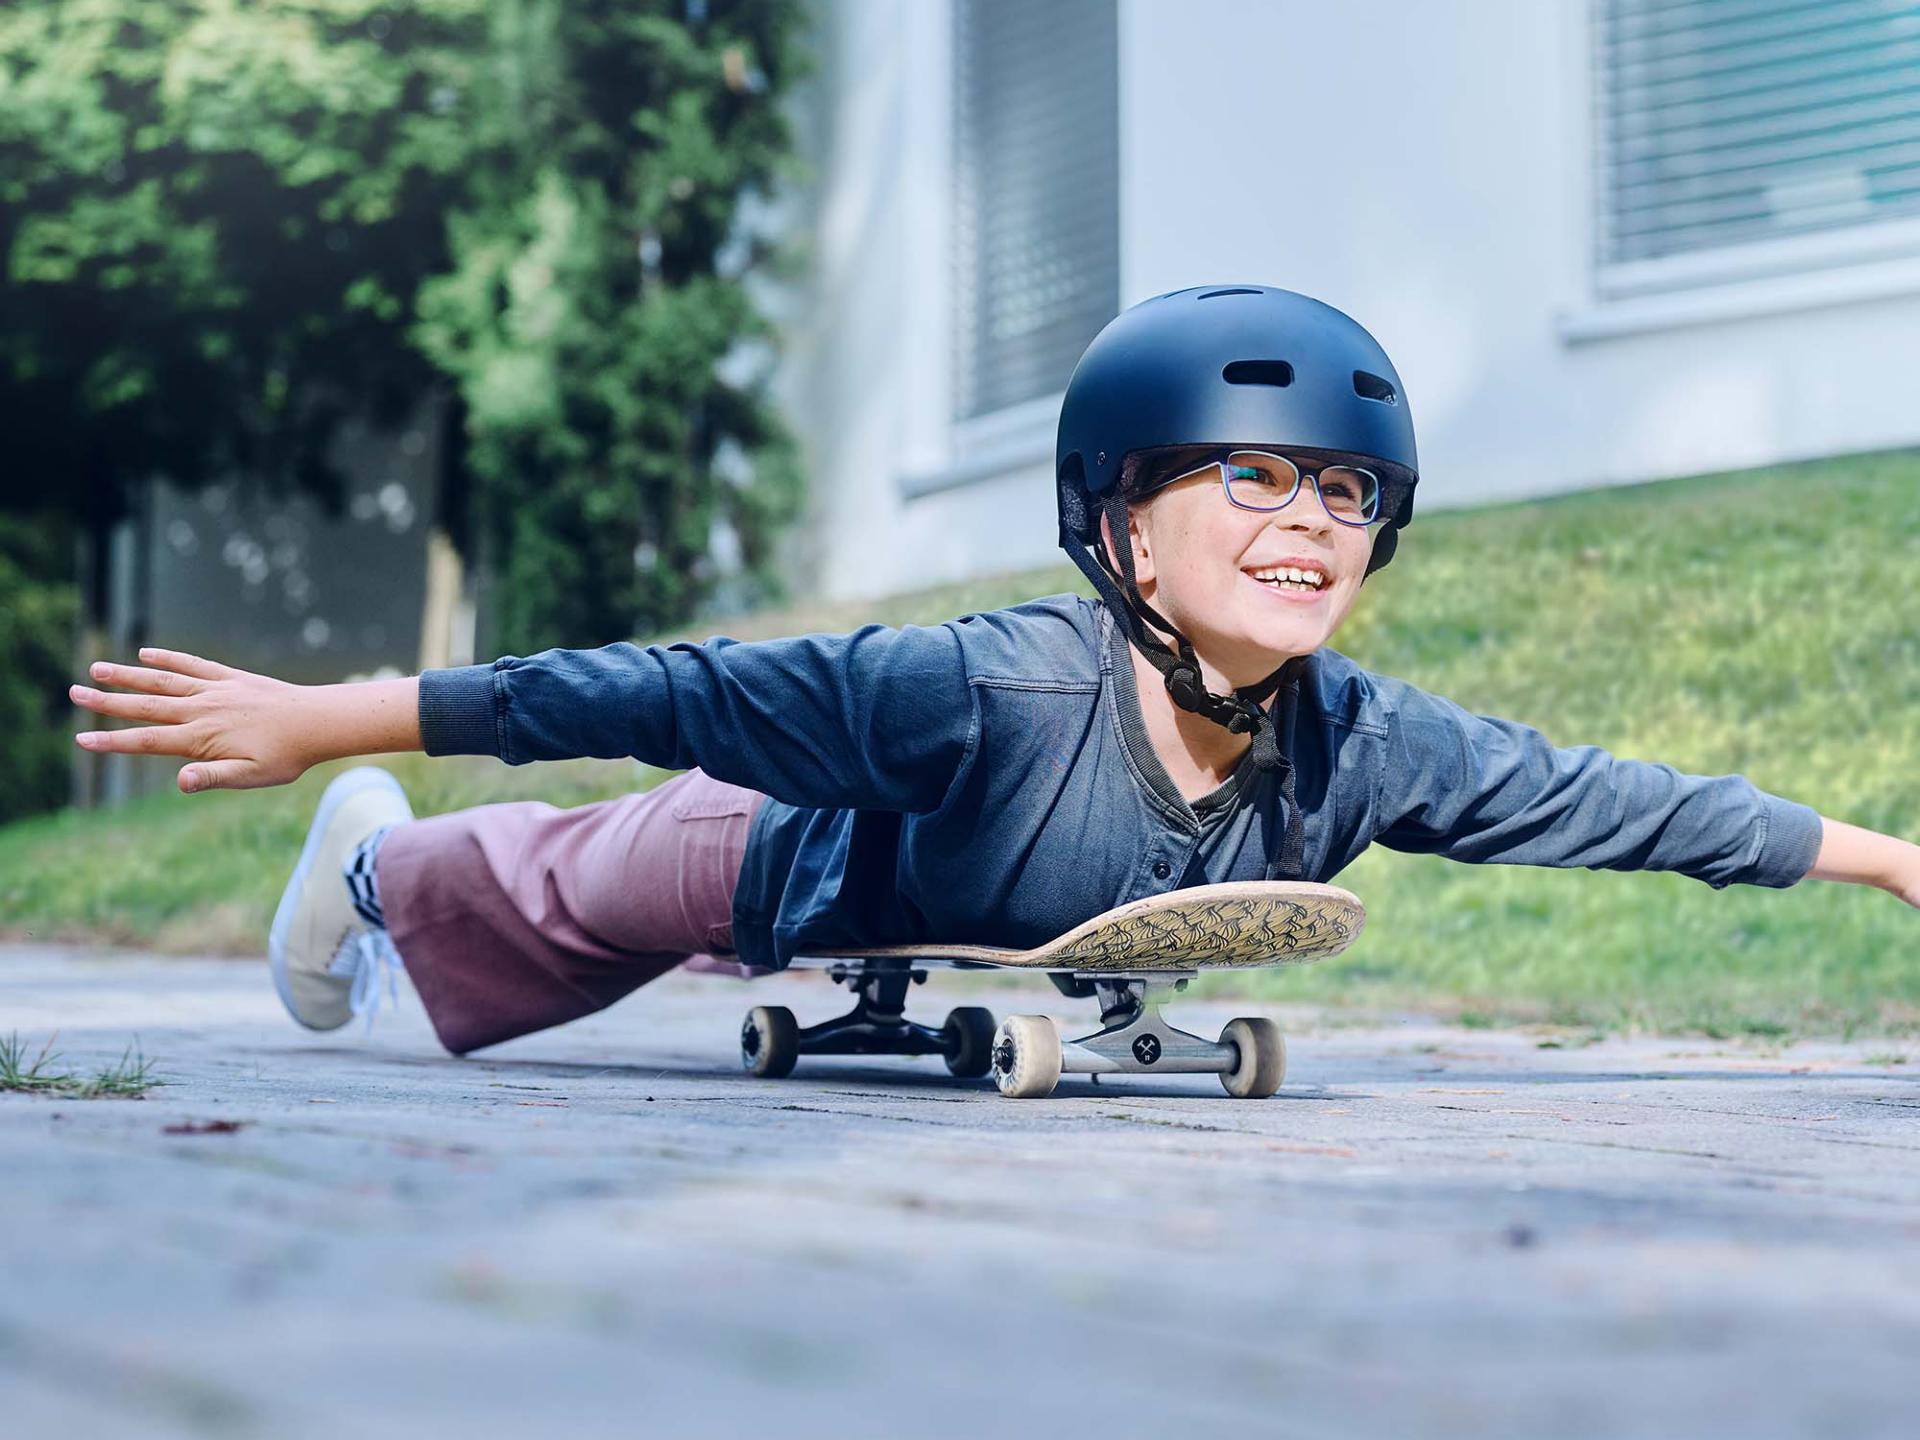 Une fillette portant un casque et des lunettes, allongée sur une planche de skate, descend une rue, bras tendus.